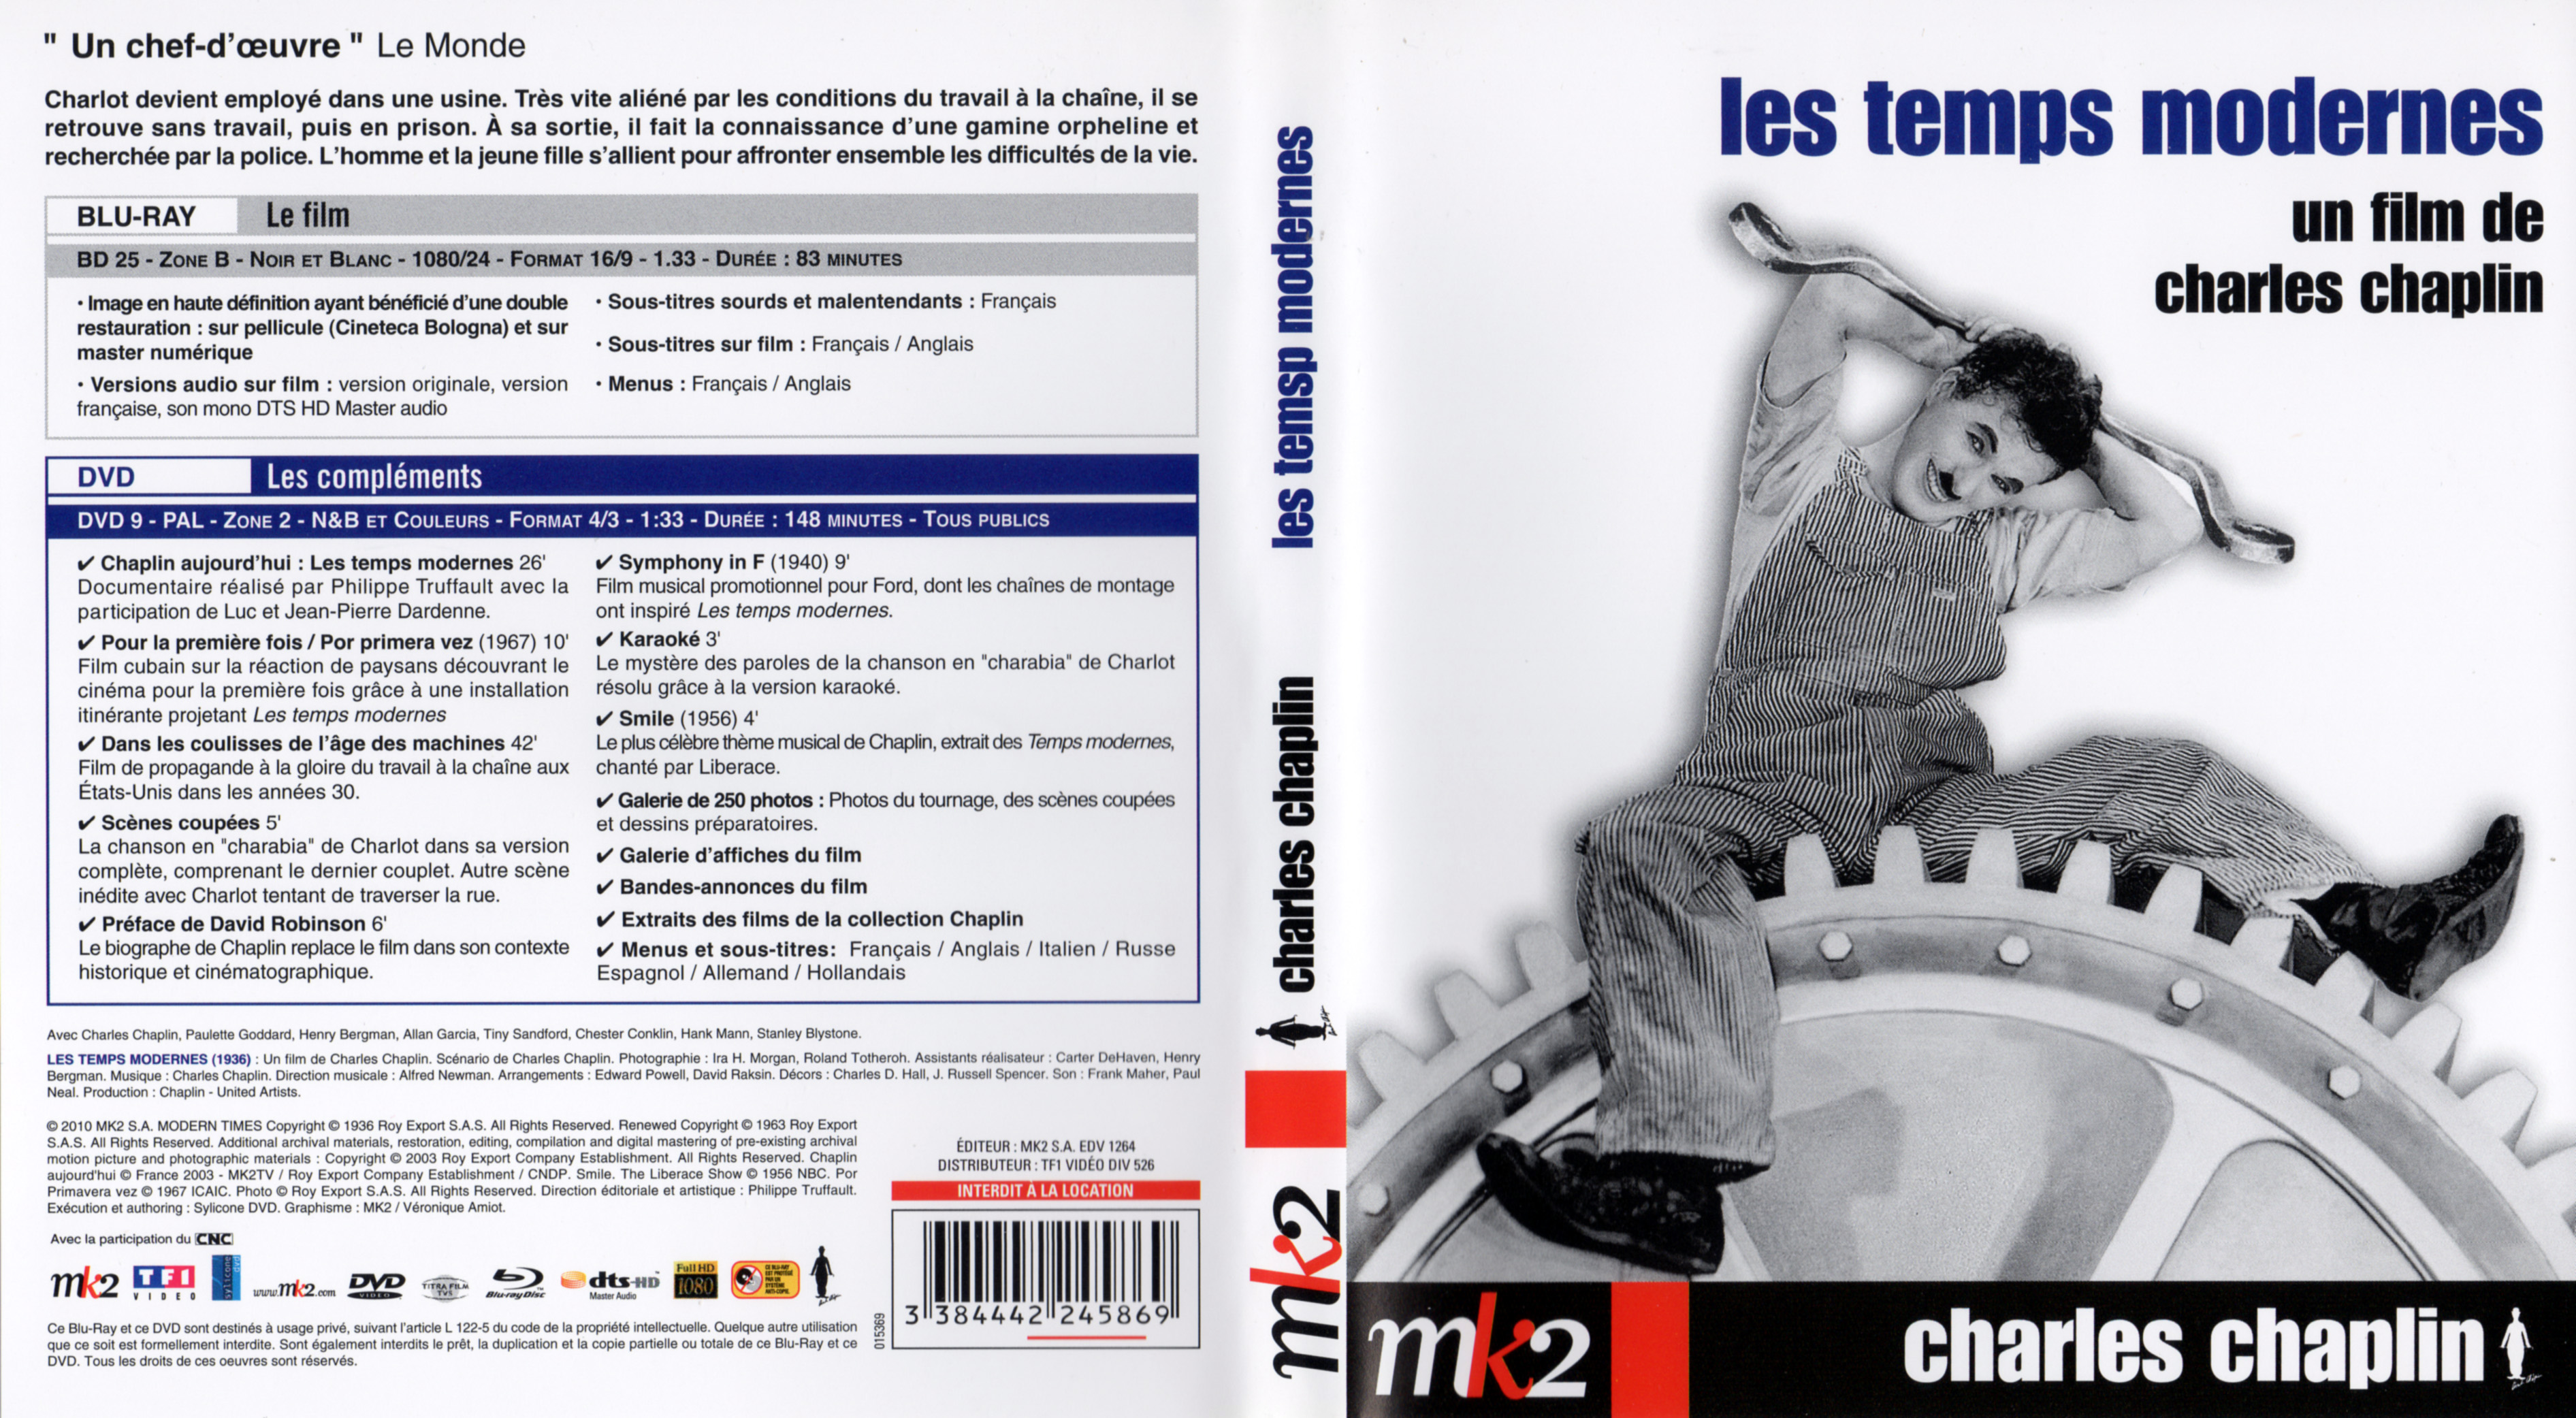 Jaquette DVD Les temps modernes (BLU-RAY)